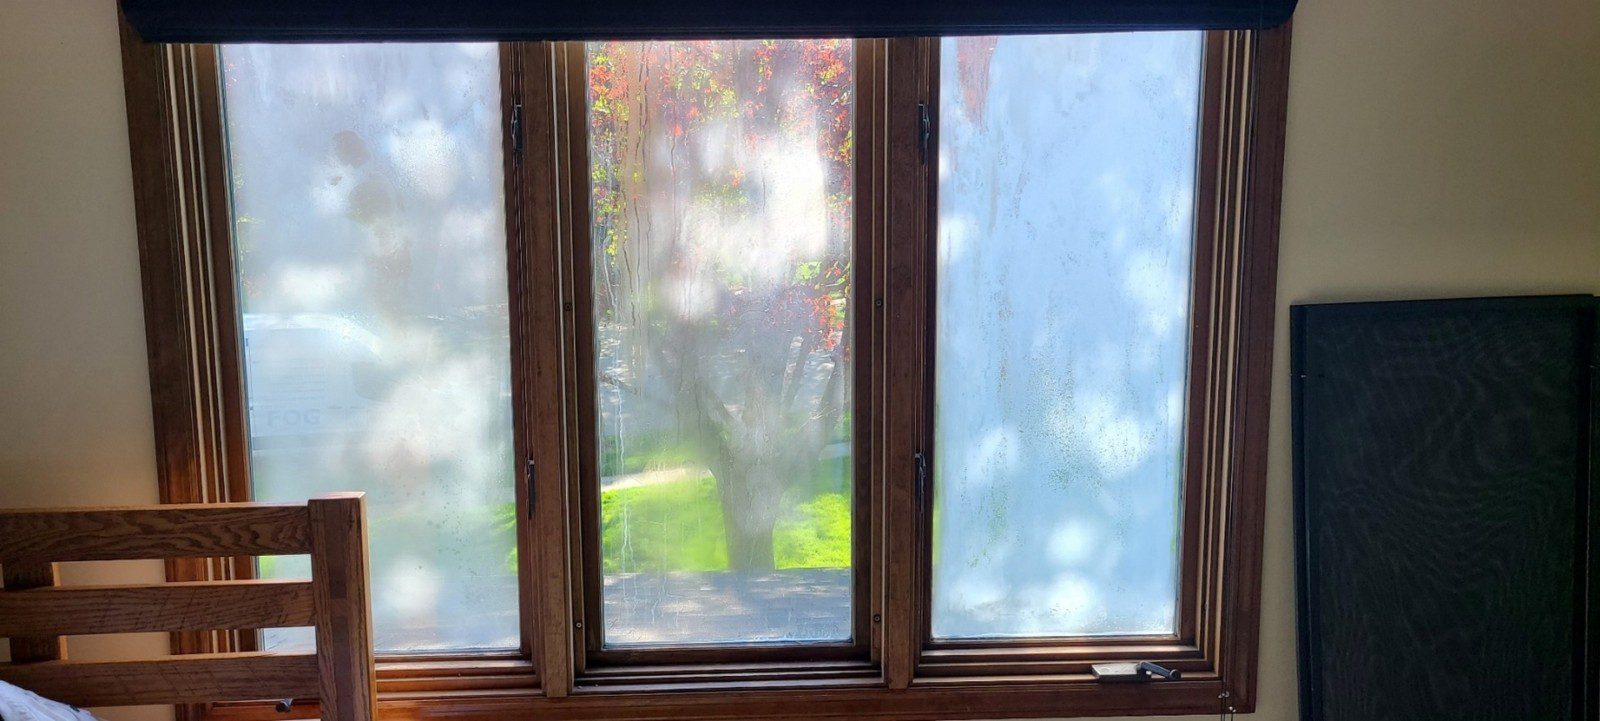 Foggy window repair